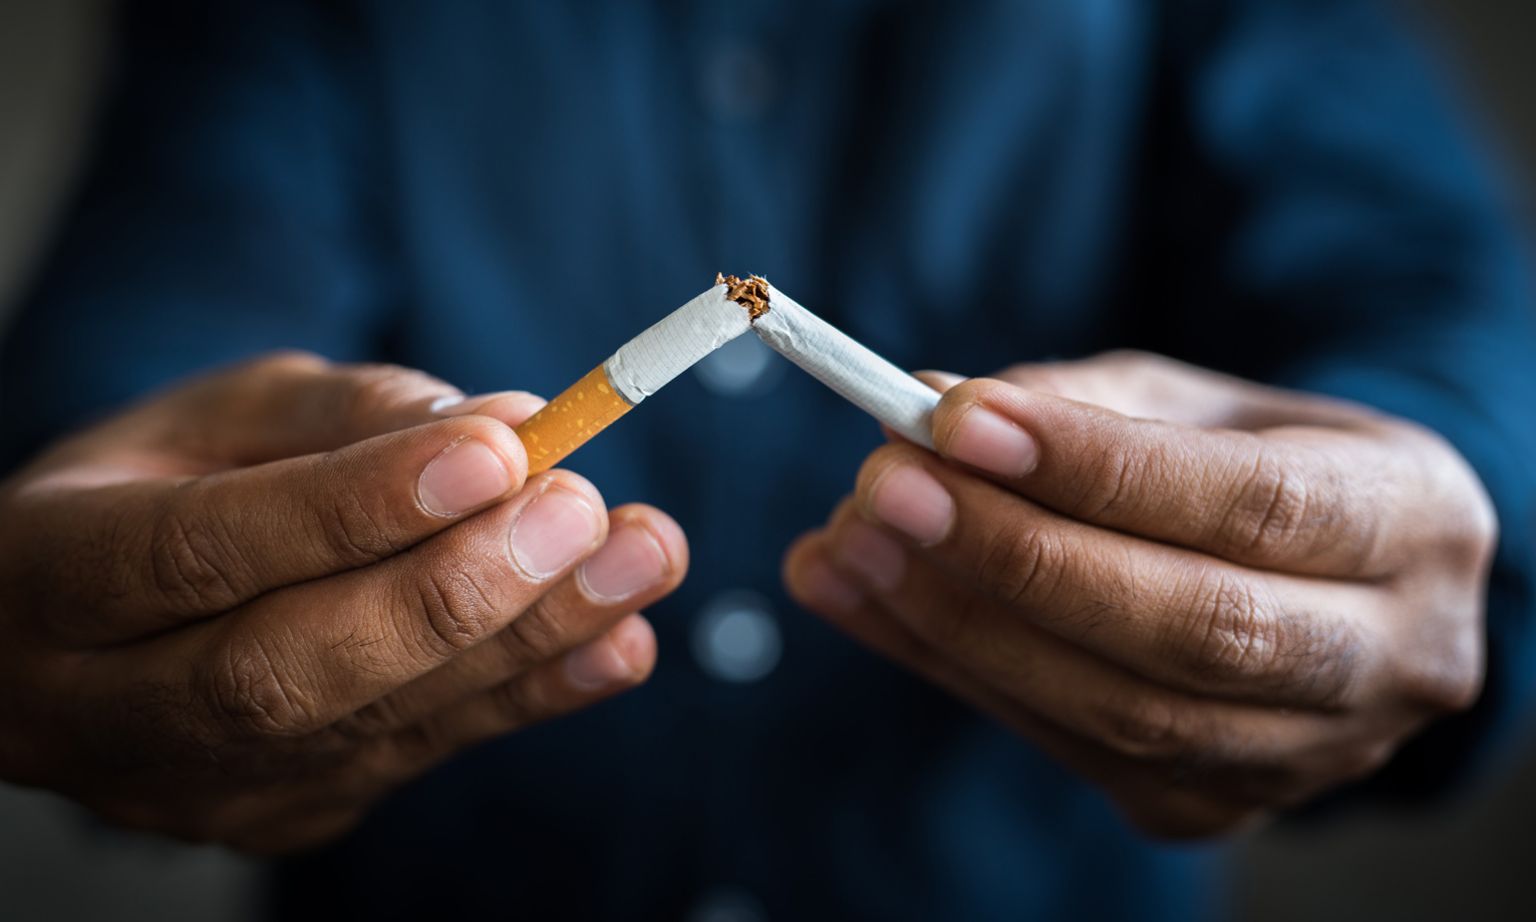 准备戒烟了吗?这些建议将帮助你永久地戒掉吸烟的习惯。